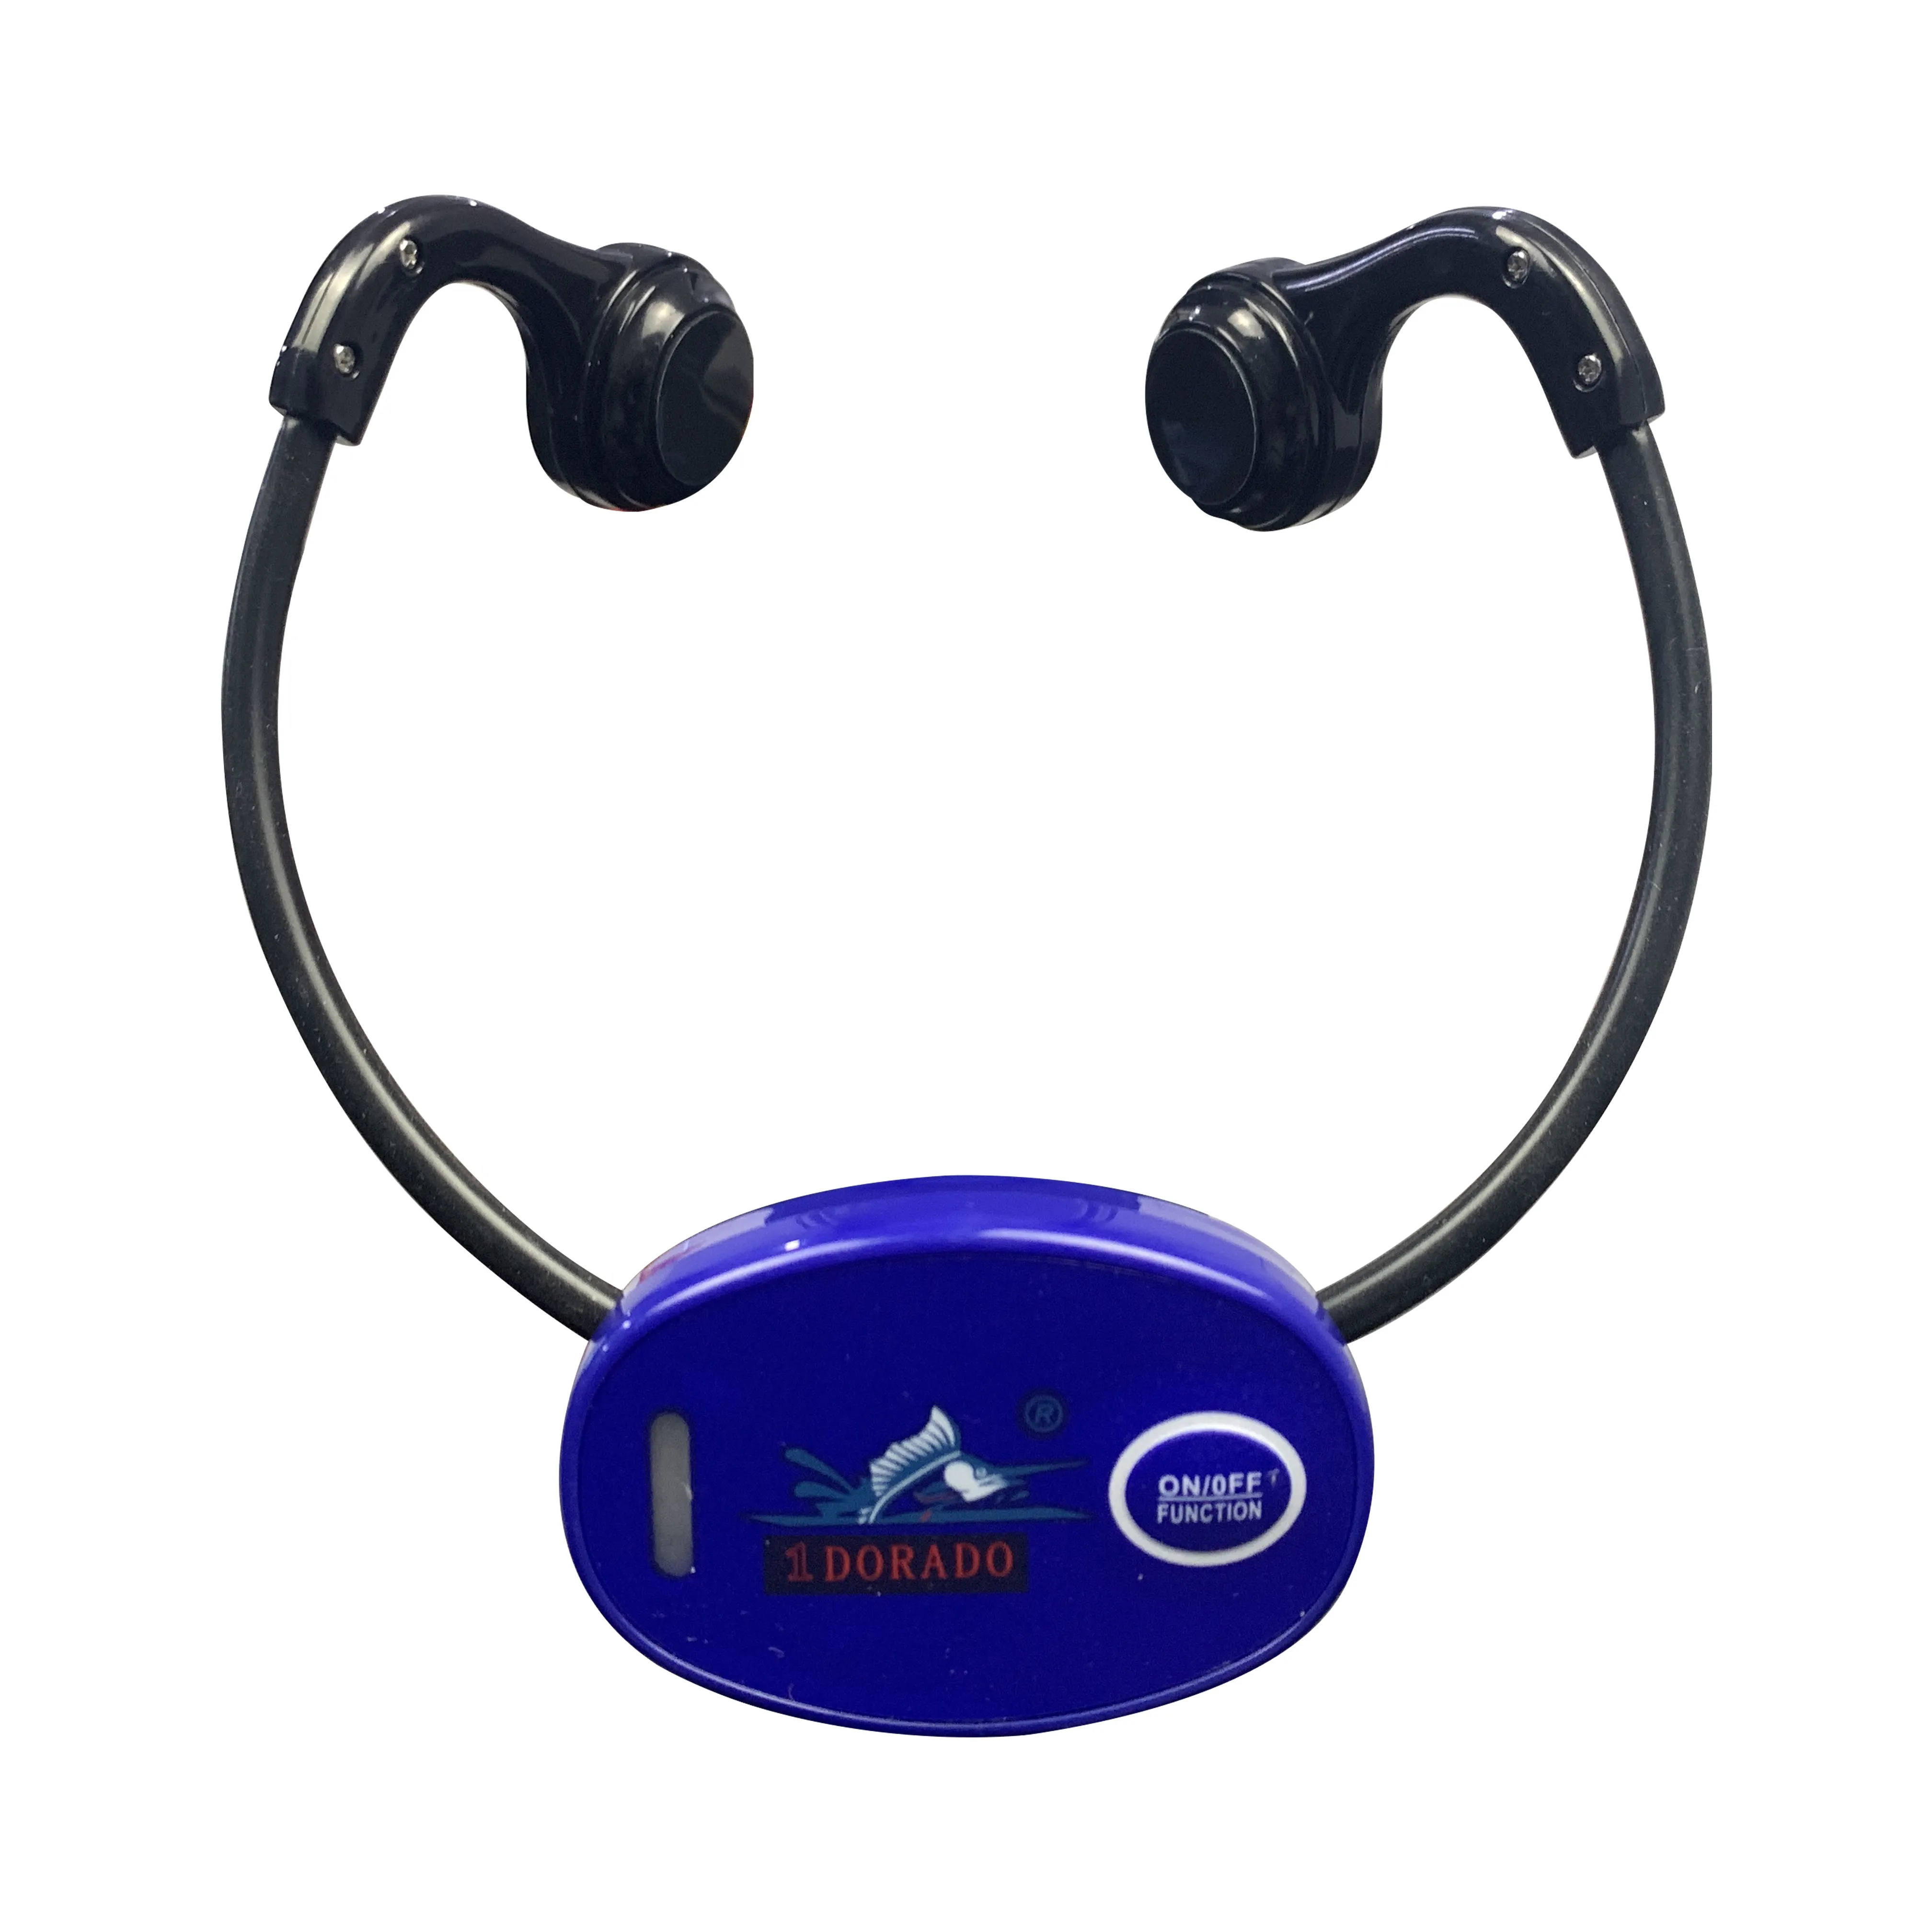 2022 Open Ear Hearing Aid Swim Teach Radio FM ricevi cuffie trasduttore a conduzione ossea cuffie Wireless